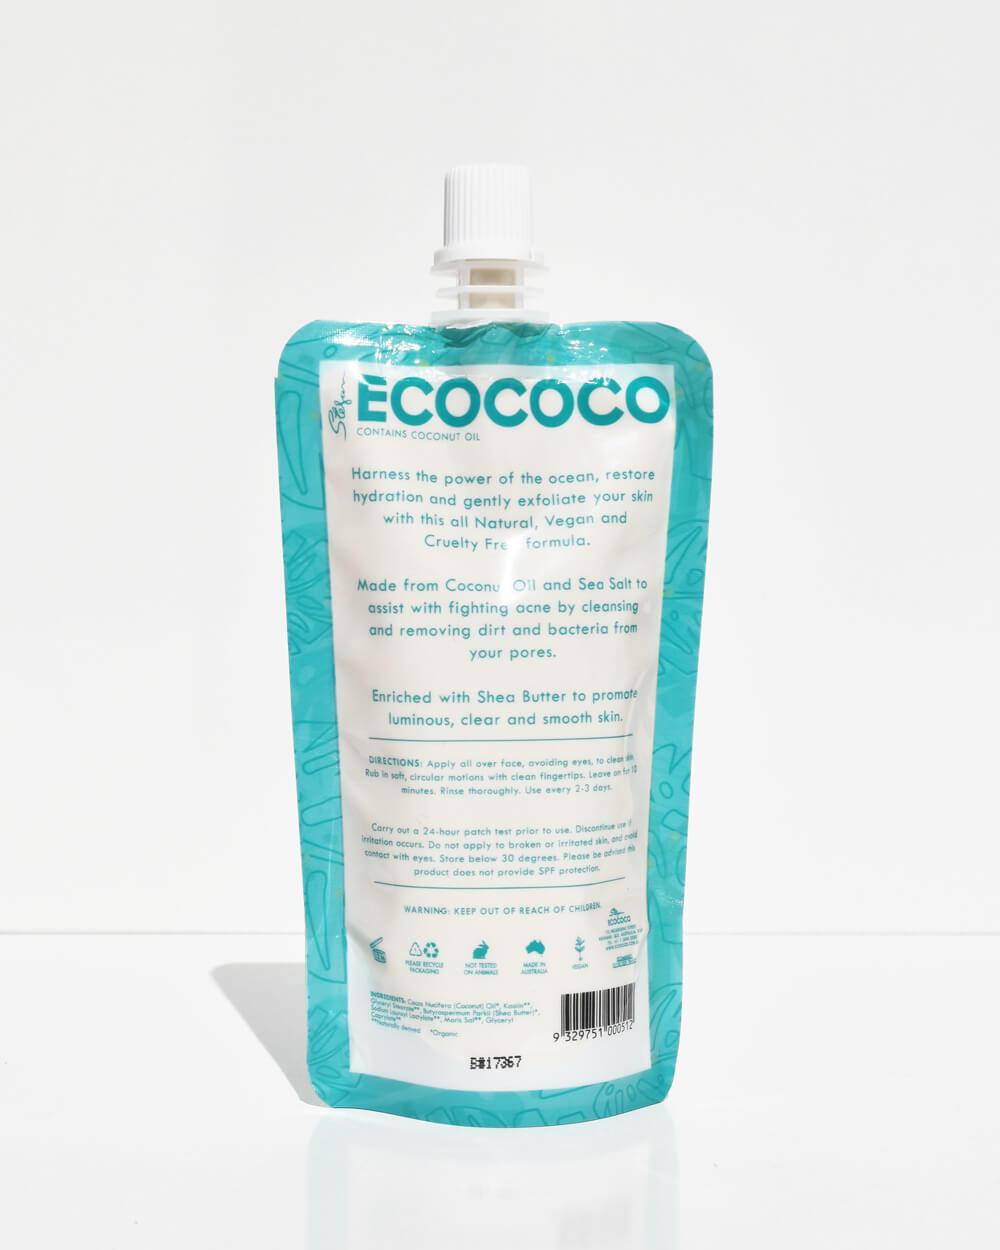 Ecococo Coconut + Sea Salt Face Mask